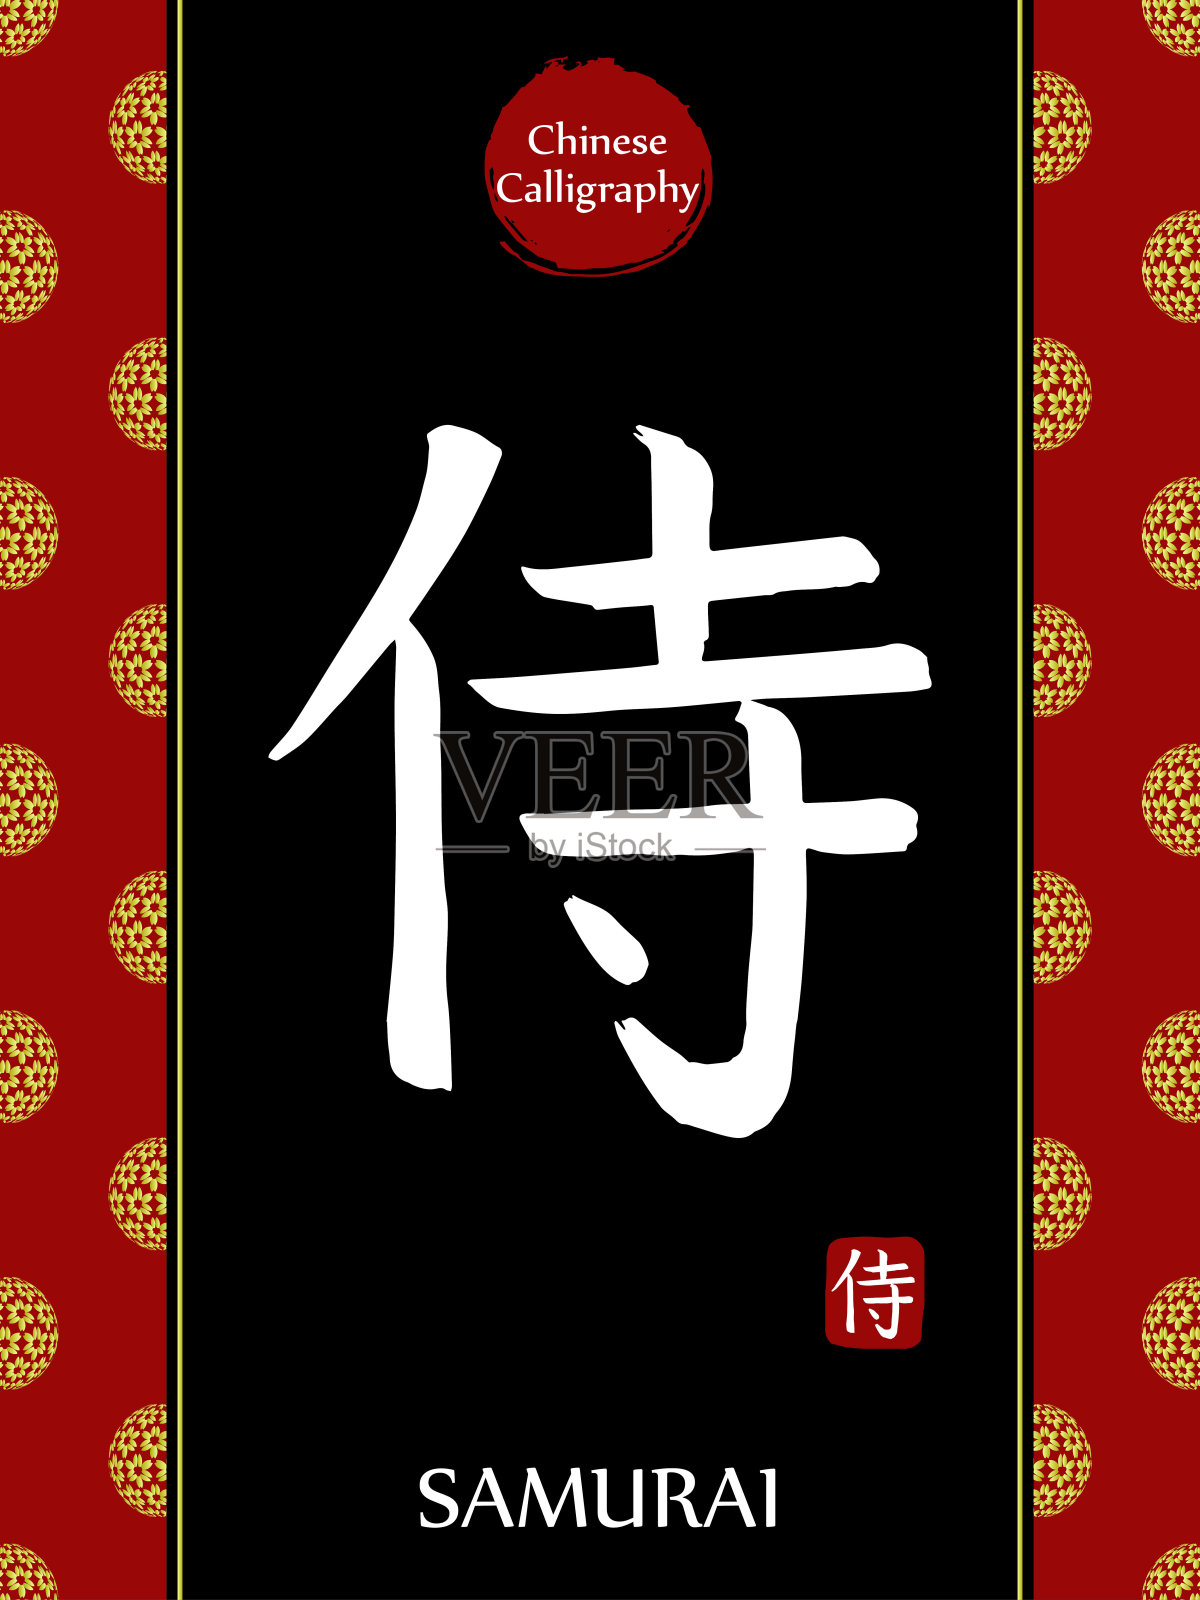 中国书法象形文字翻译:武士。亚洲金花球农历新年图案。向量中国符号在黑色背景。手绘图画文字。毛笔书法插画图片素材